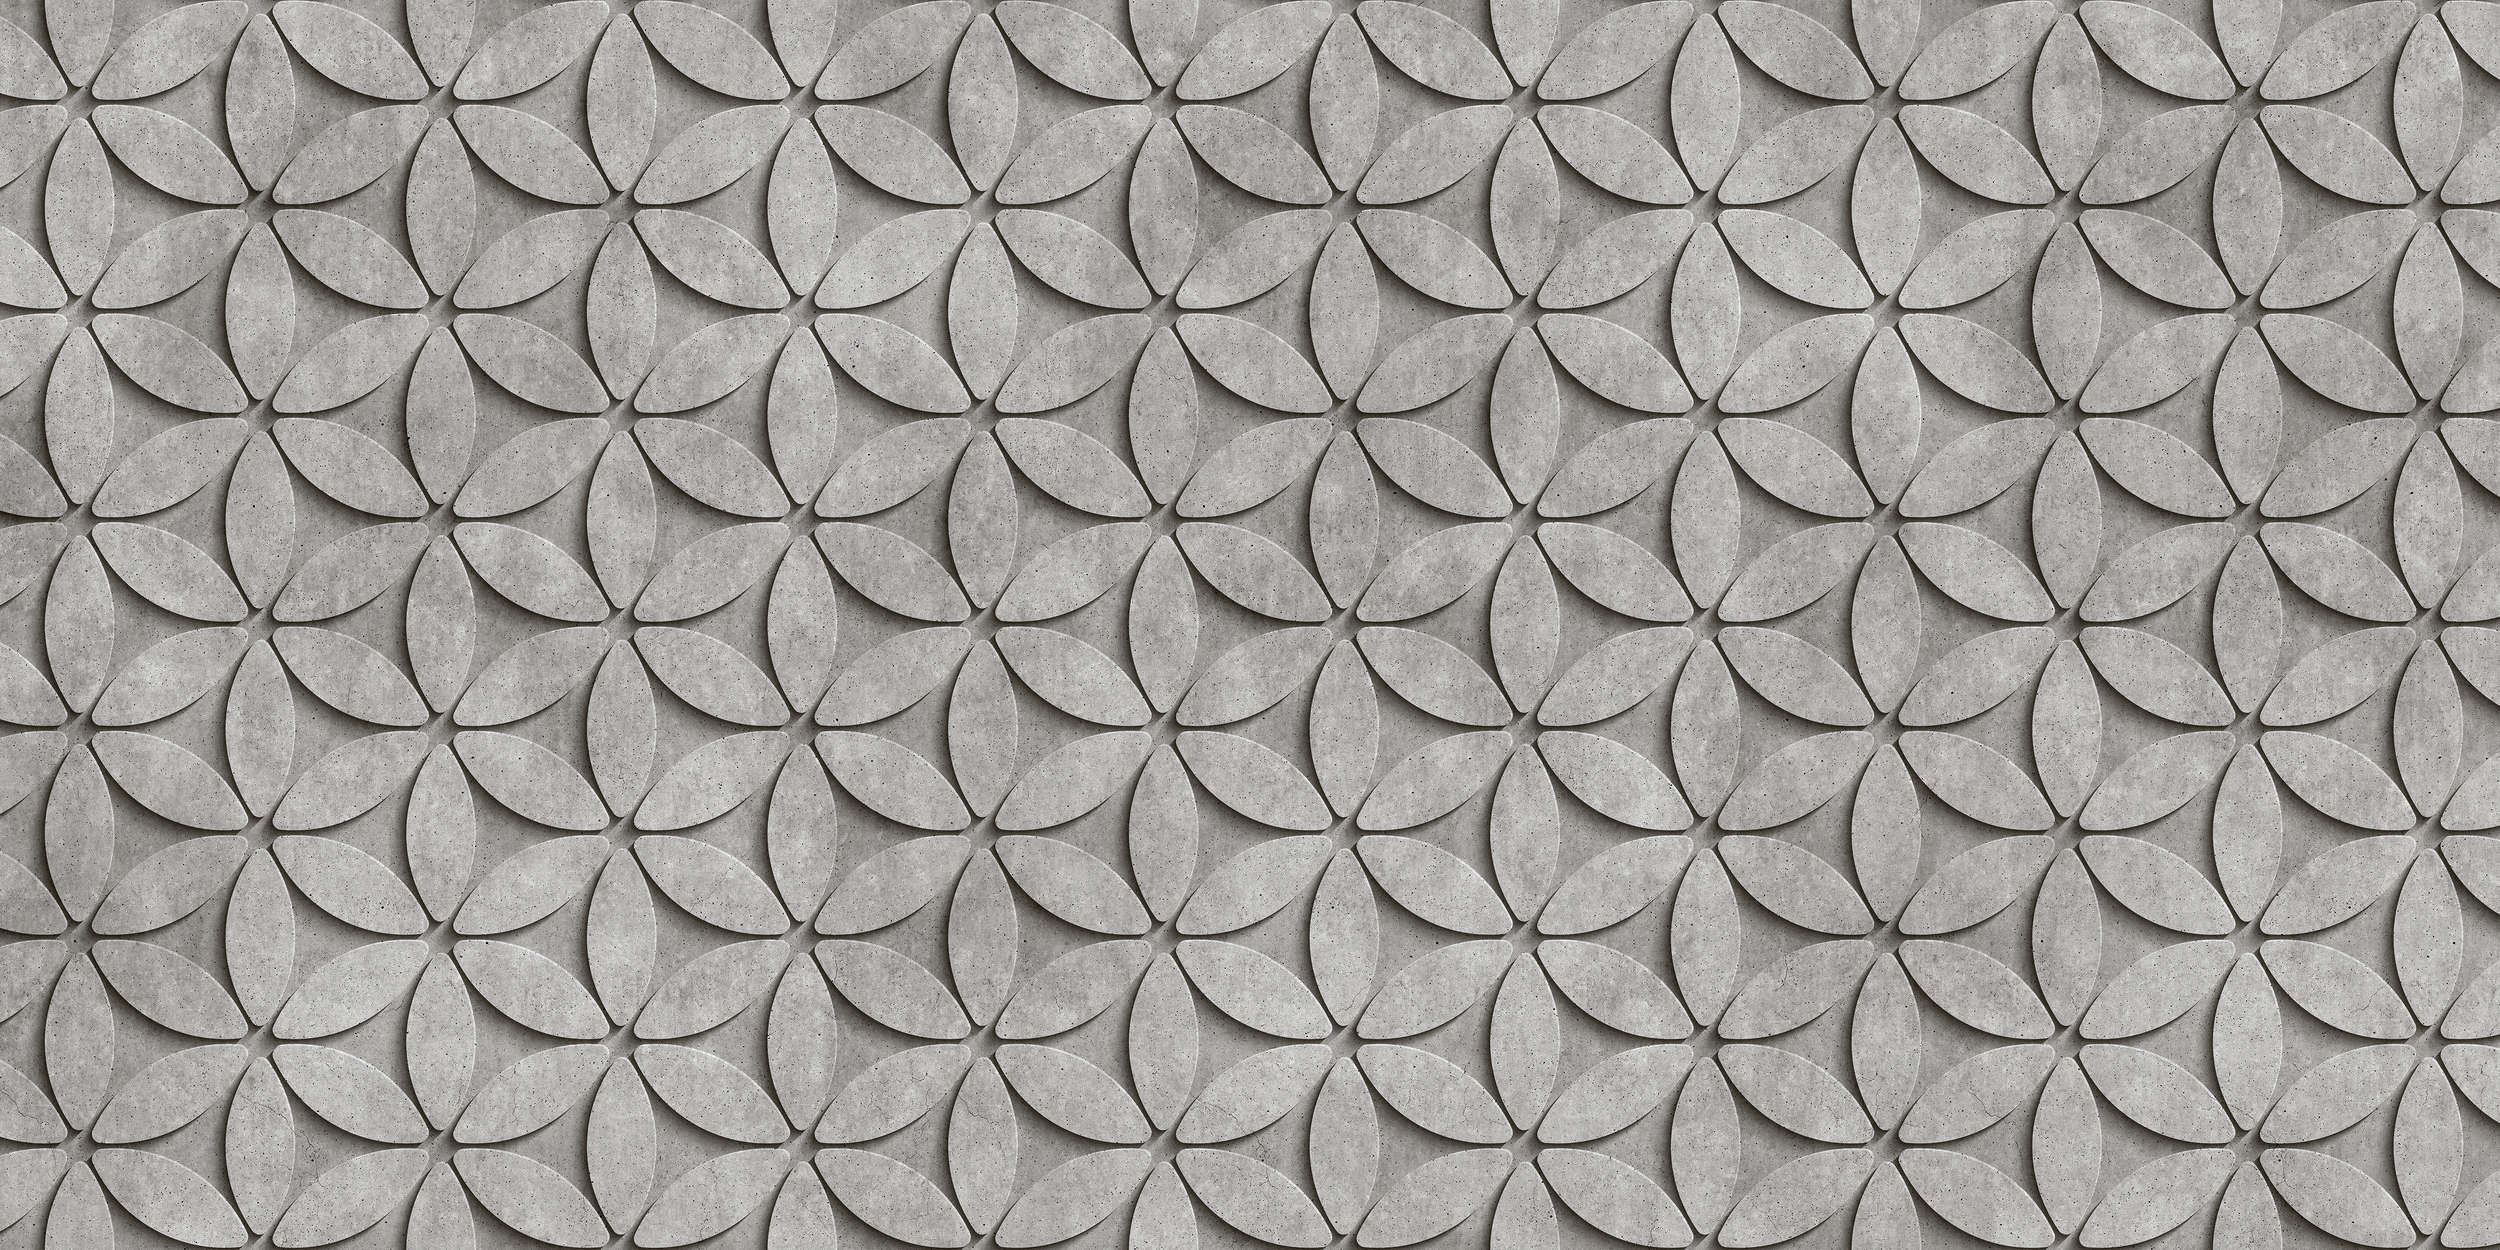             Tegel 1 - Onderlaag behang in Cool 3D Concrete Polygonen - Grijs, Zwart | Strukturen Non-woven
        